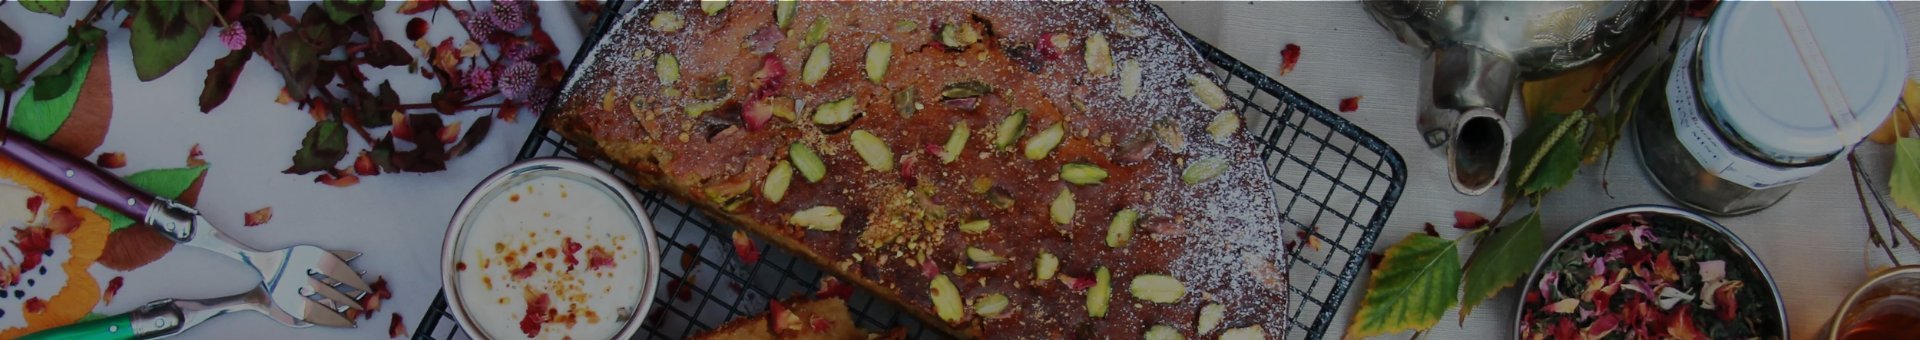 Baking Spices - Gewürzhaus